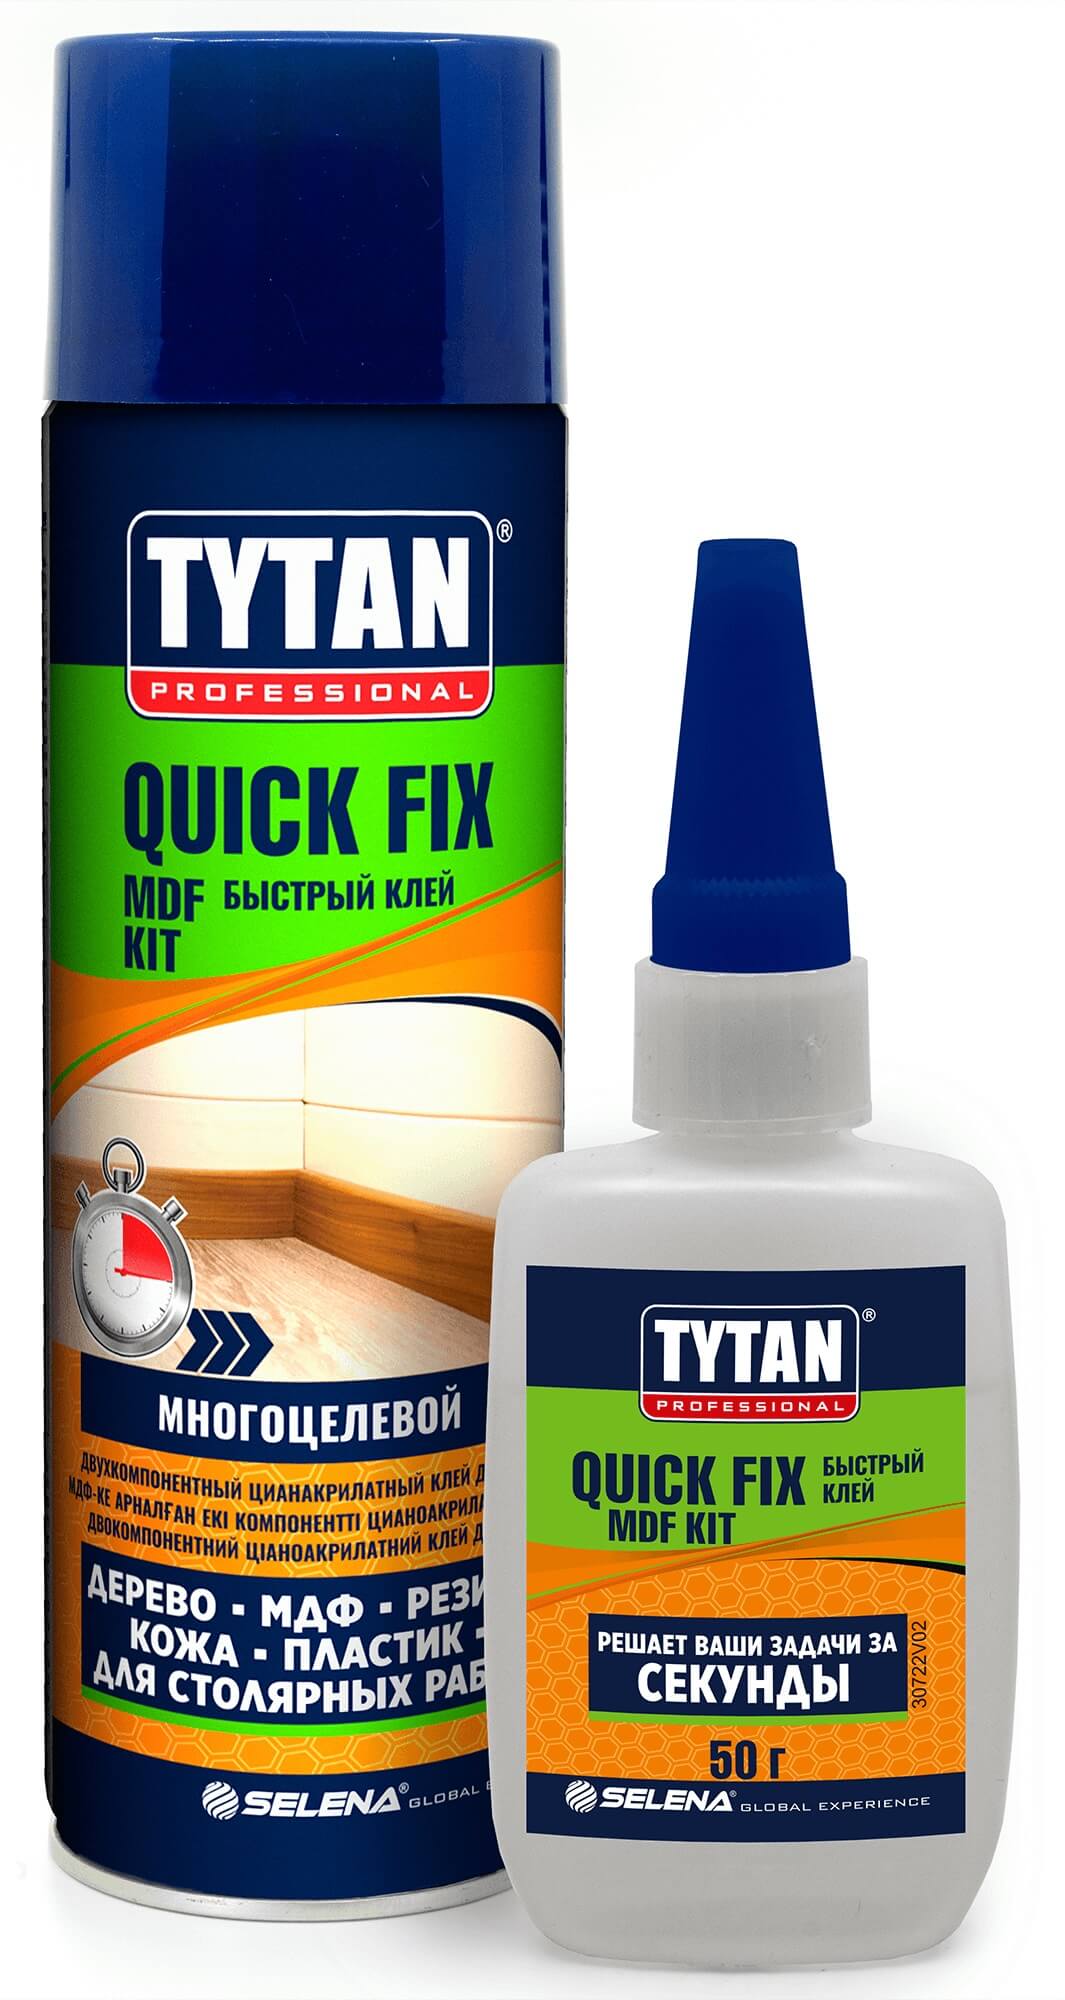 Двухкомпонентный цианакрилатный клей для МДФ - Tytan Professional